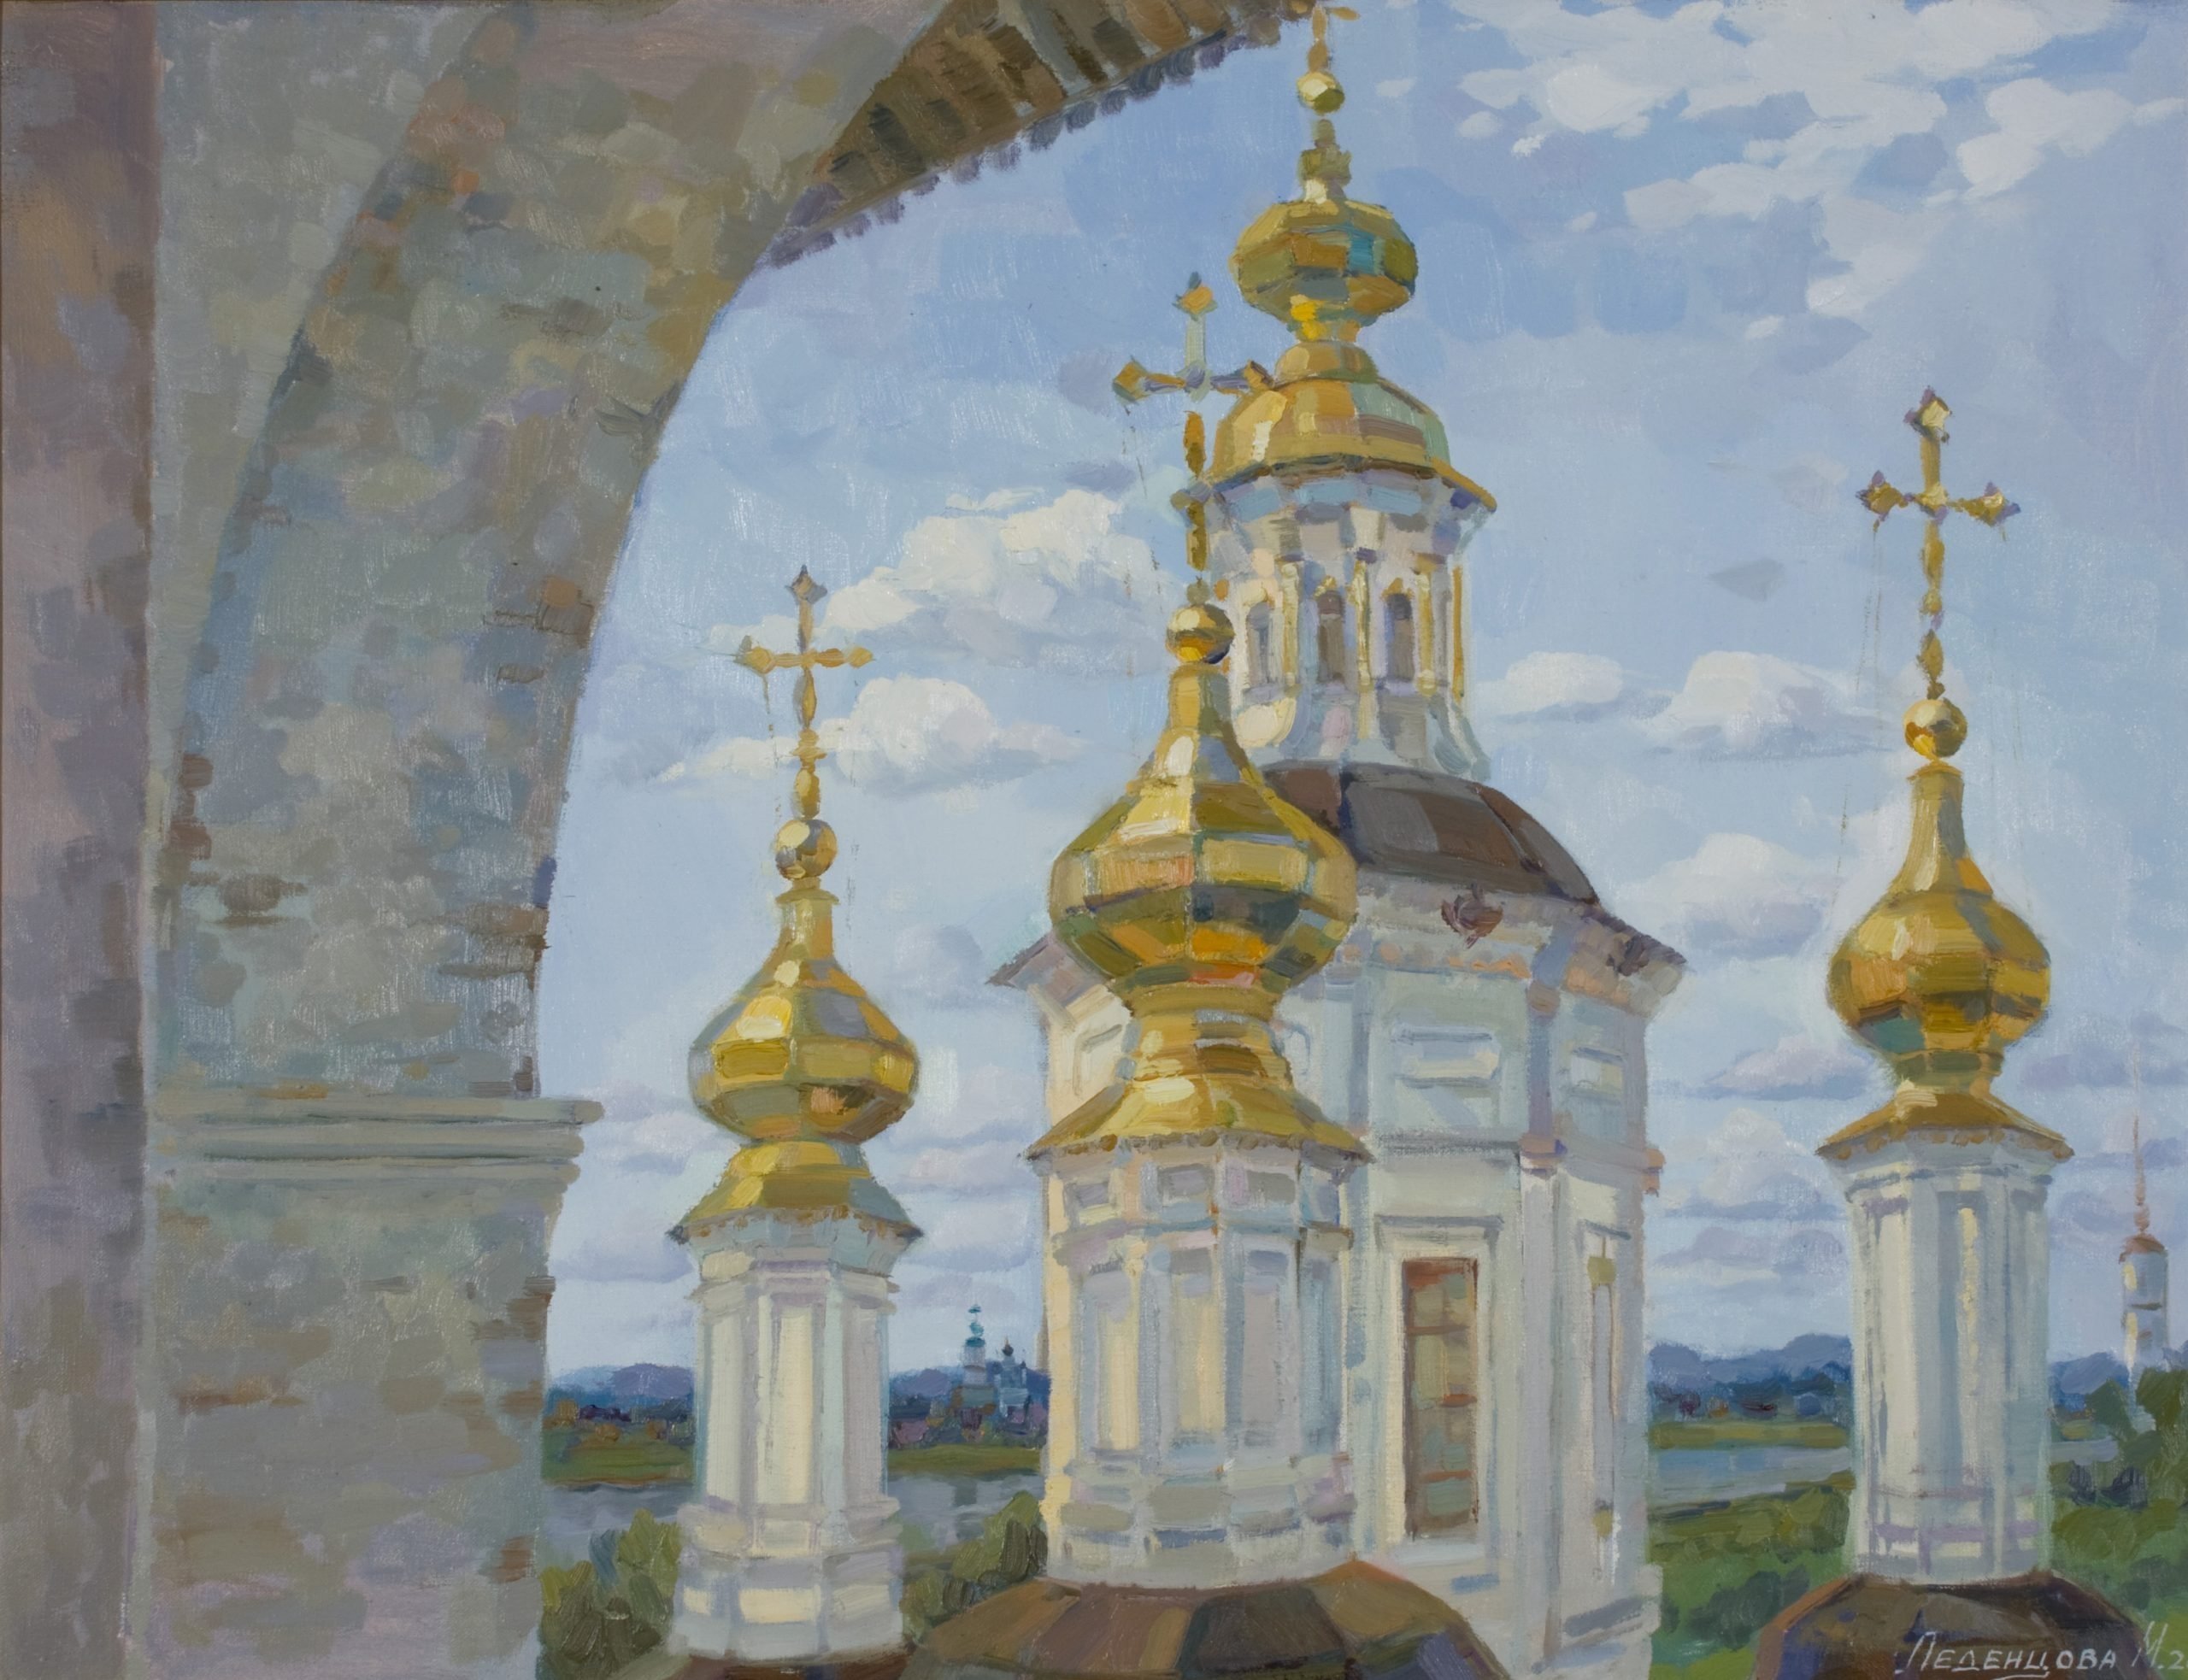 Золотые купола храма в живописи великих художников